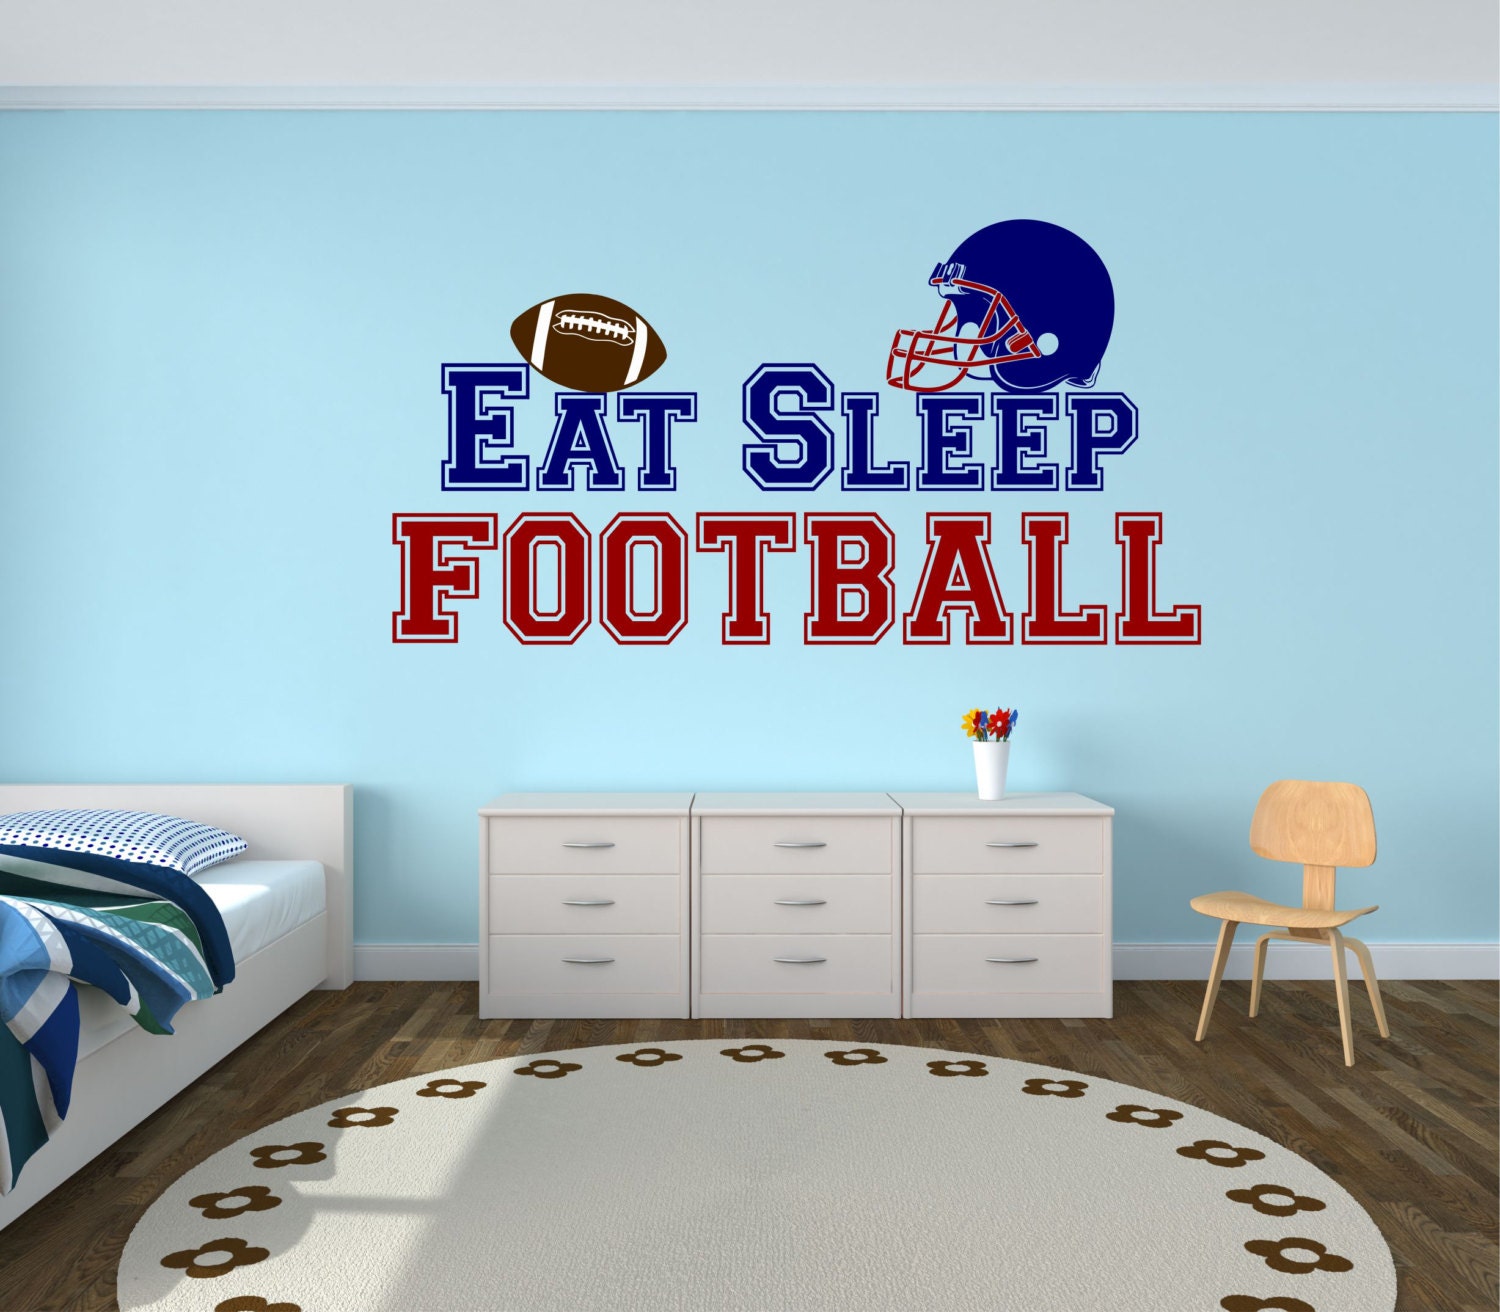 Football Wall Decal Eat Sleep Football Football Wall Decor